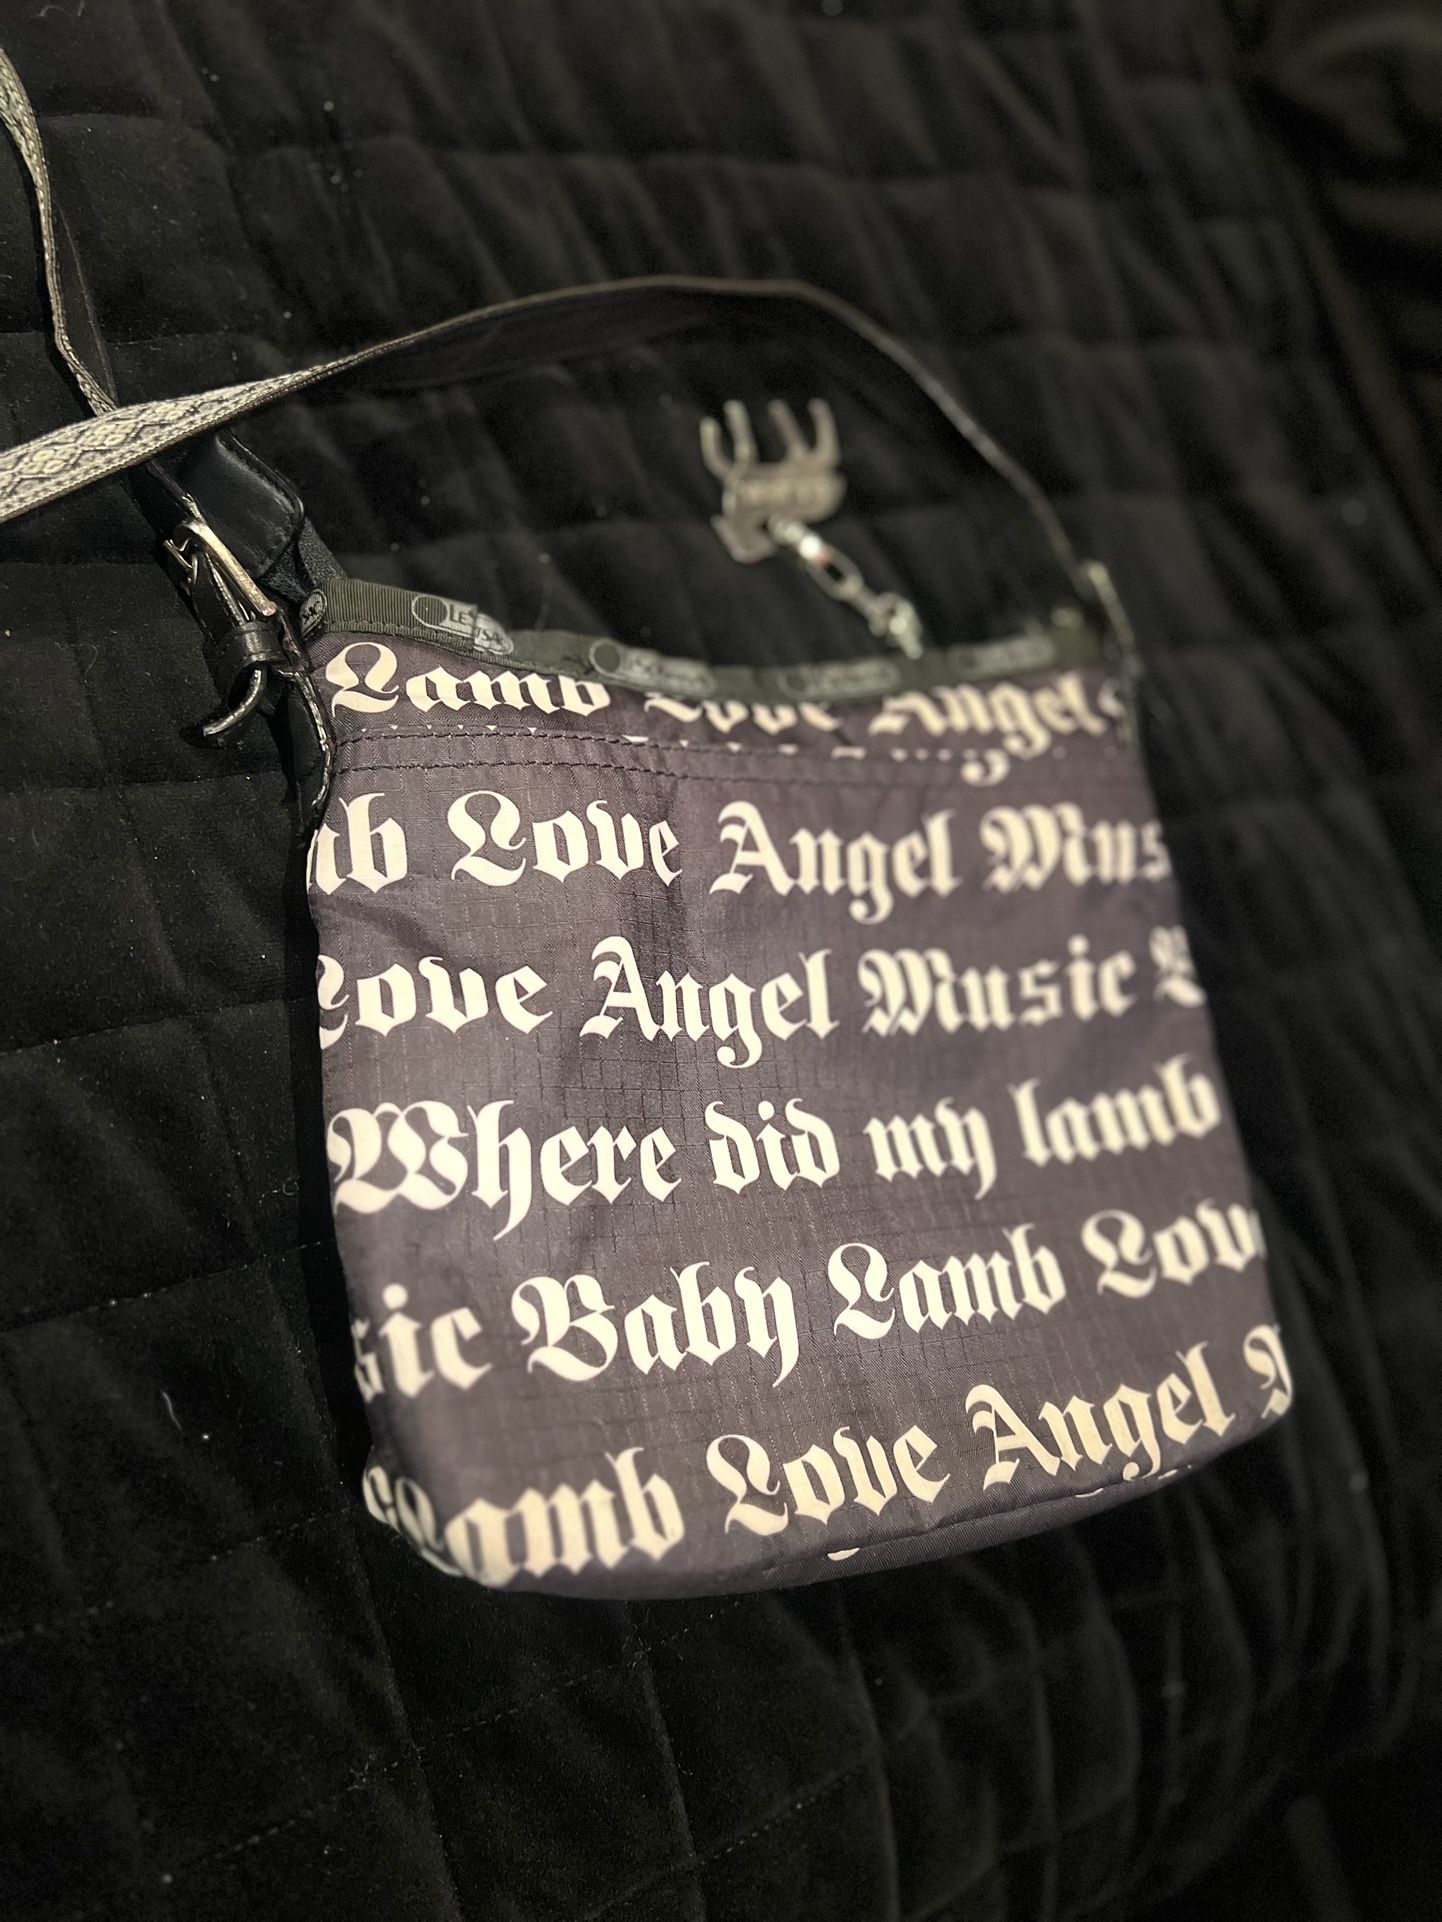 Vintage Lesportsac LAMB Gwen Stefani Concert Bag for Sale in